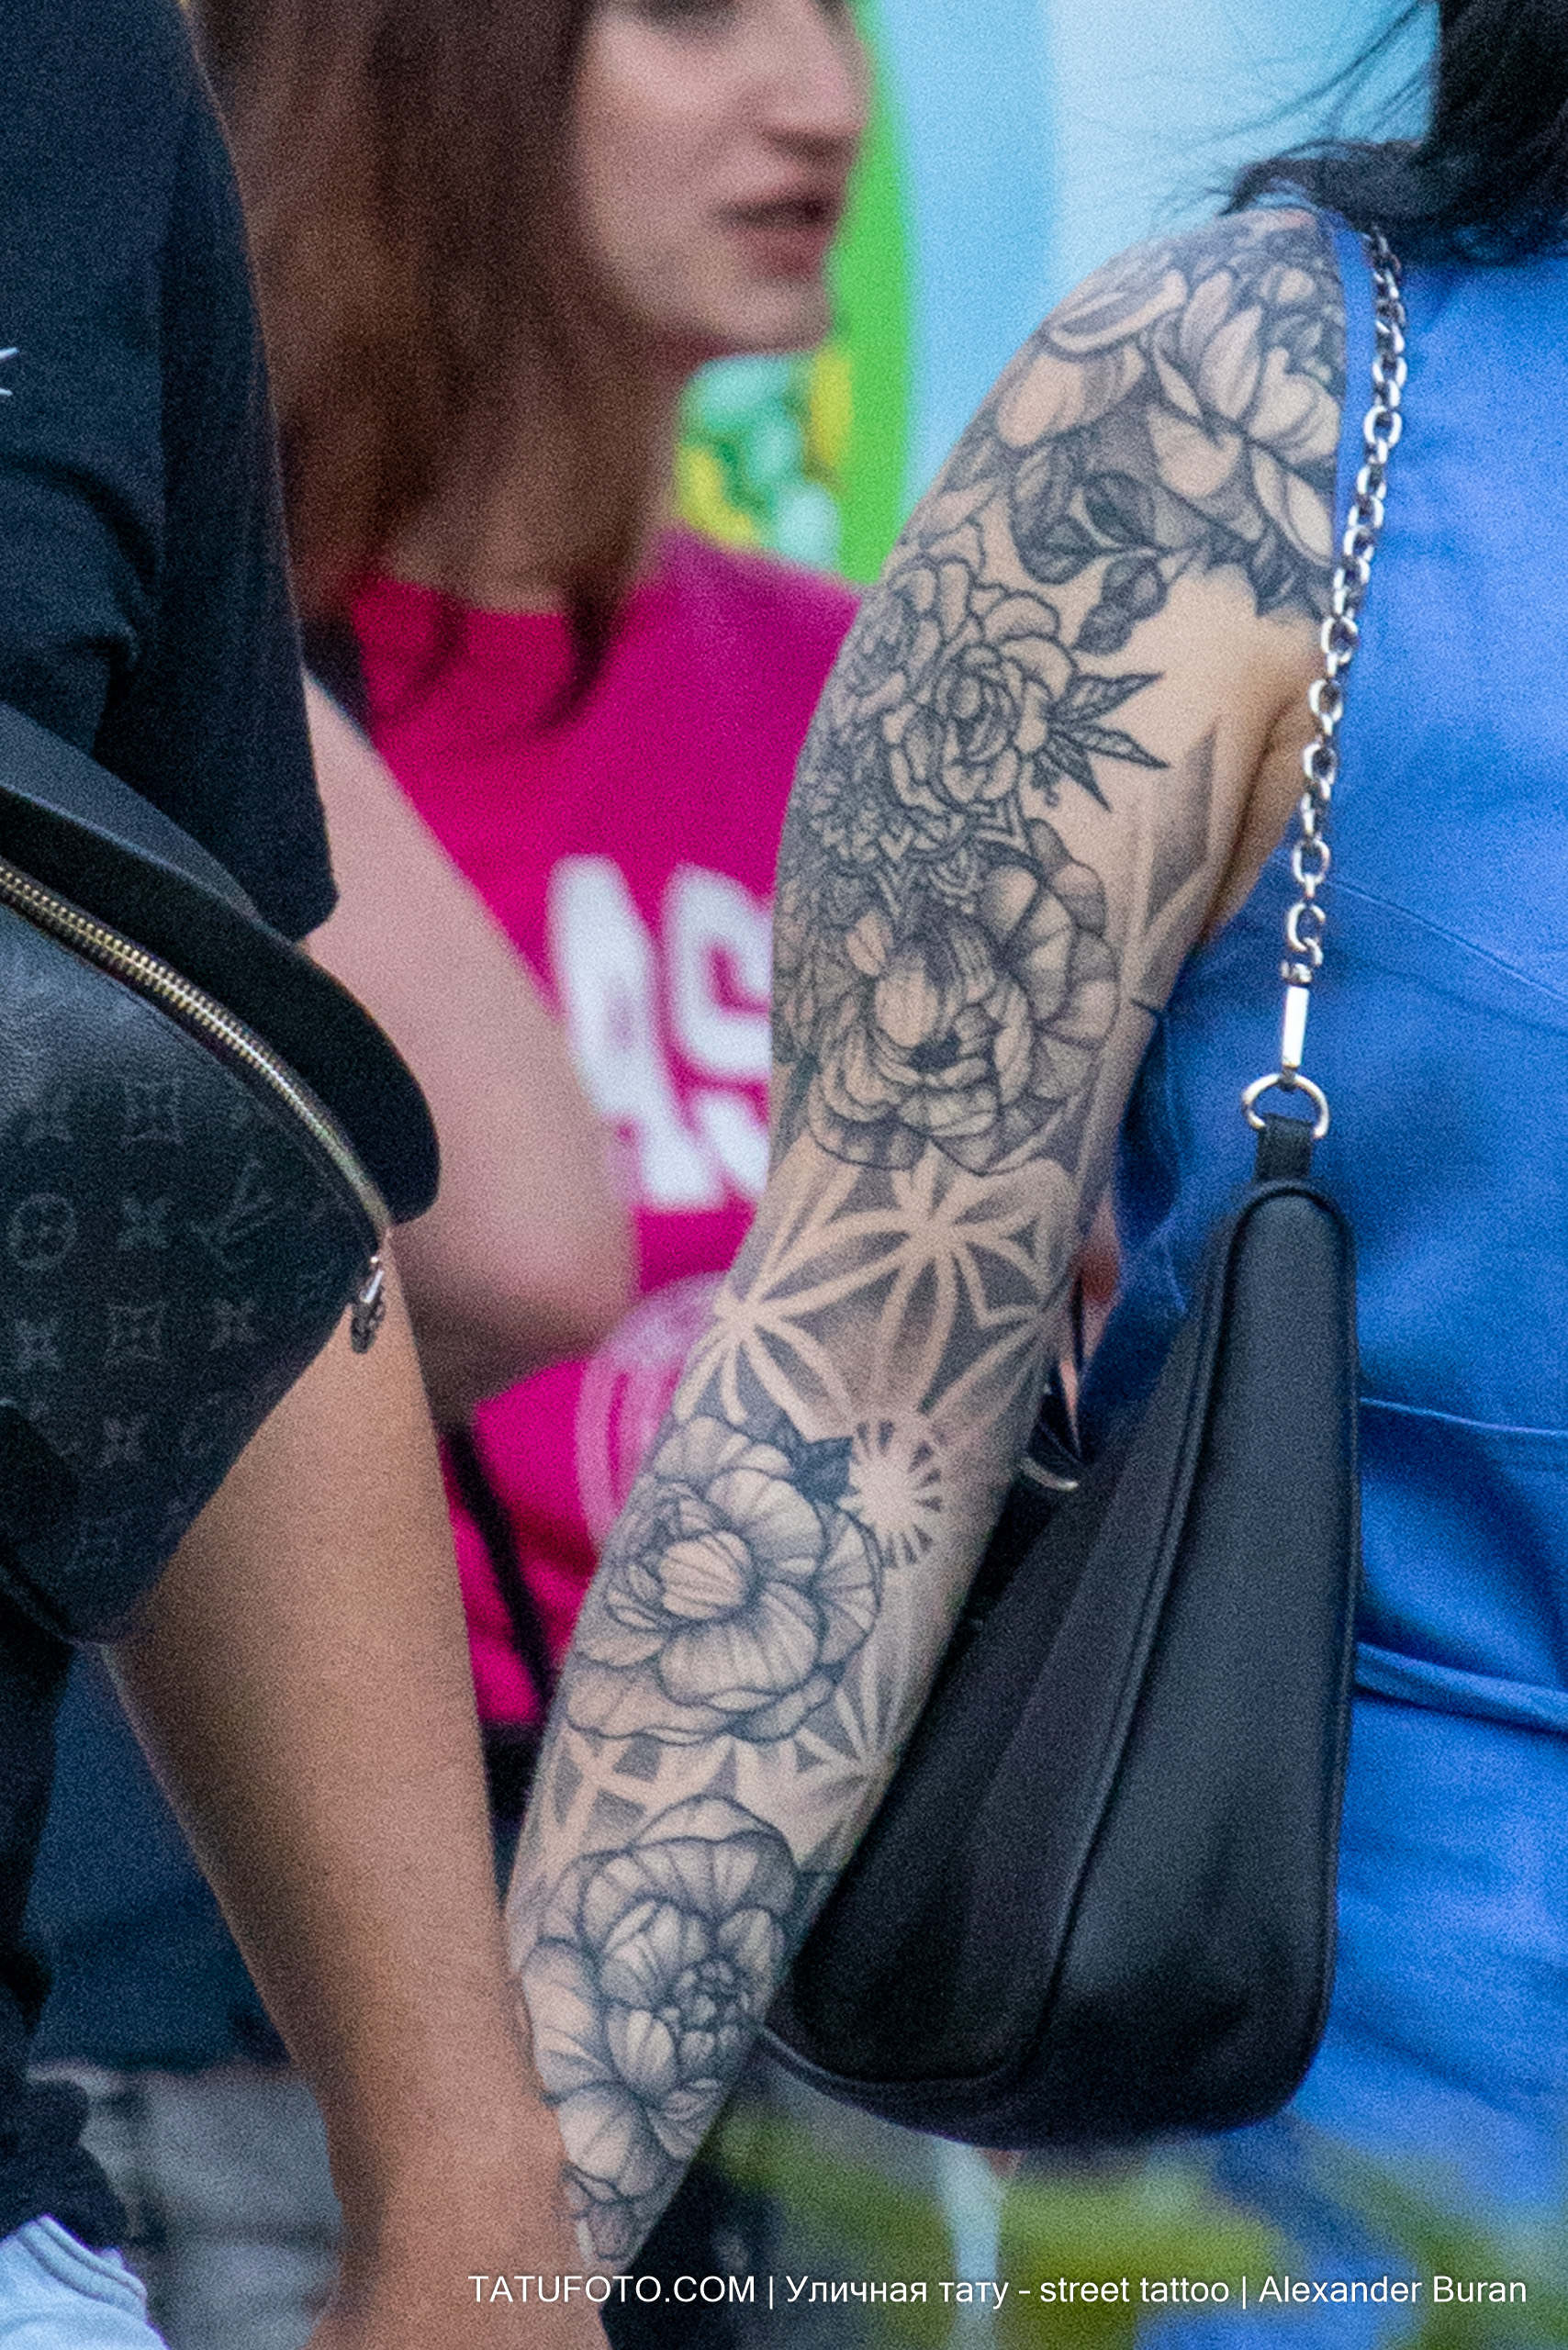 Крупная татуировка с цветами на правой руке женщины 6 tatufoto.com - уличная тату